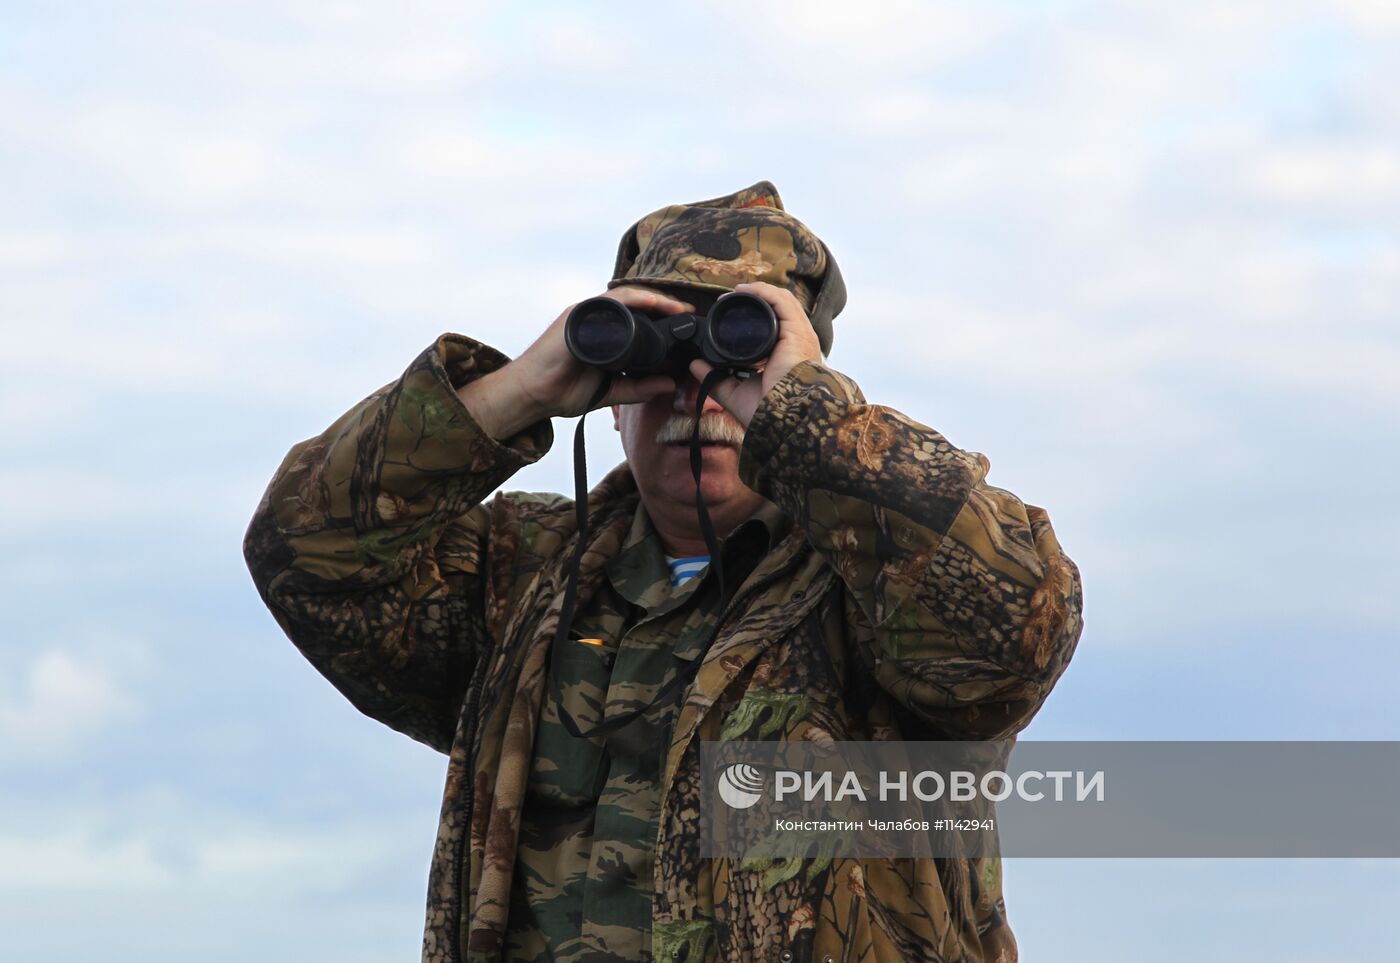 Рейд сотрудников рыбнадзора с сотрудниками МВД на озере Ильмень